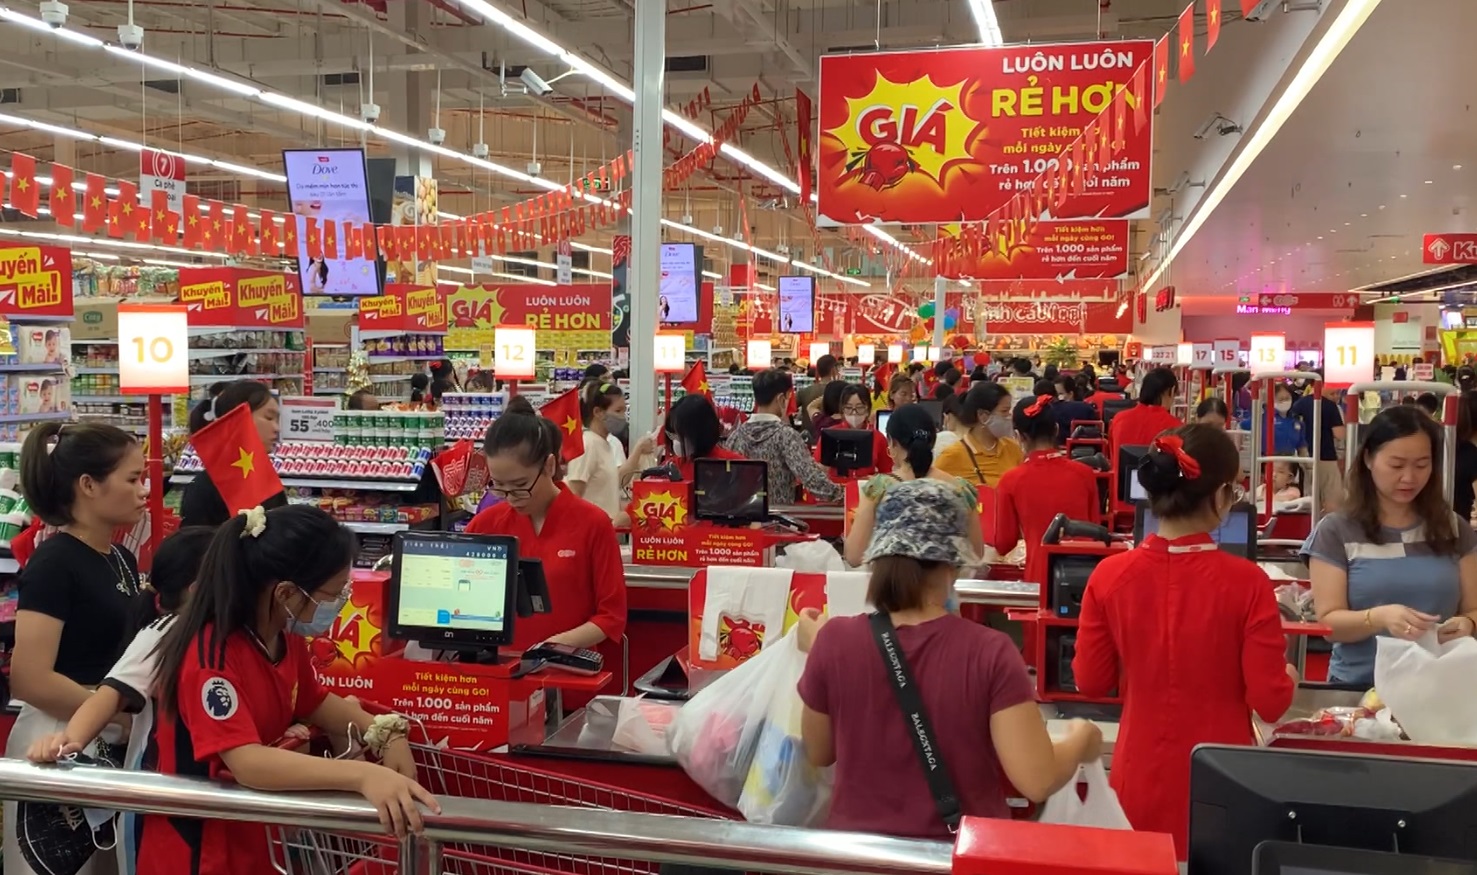 Lượng khách mua sắm tại các siêu thị lớn dịp nghỉ lễ tăng 4-5 lần ngày thường